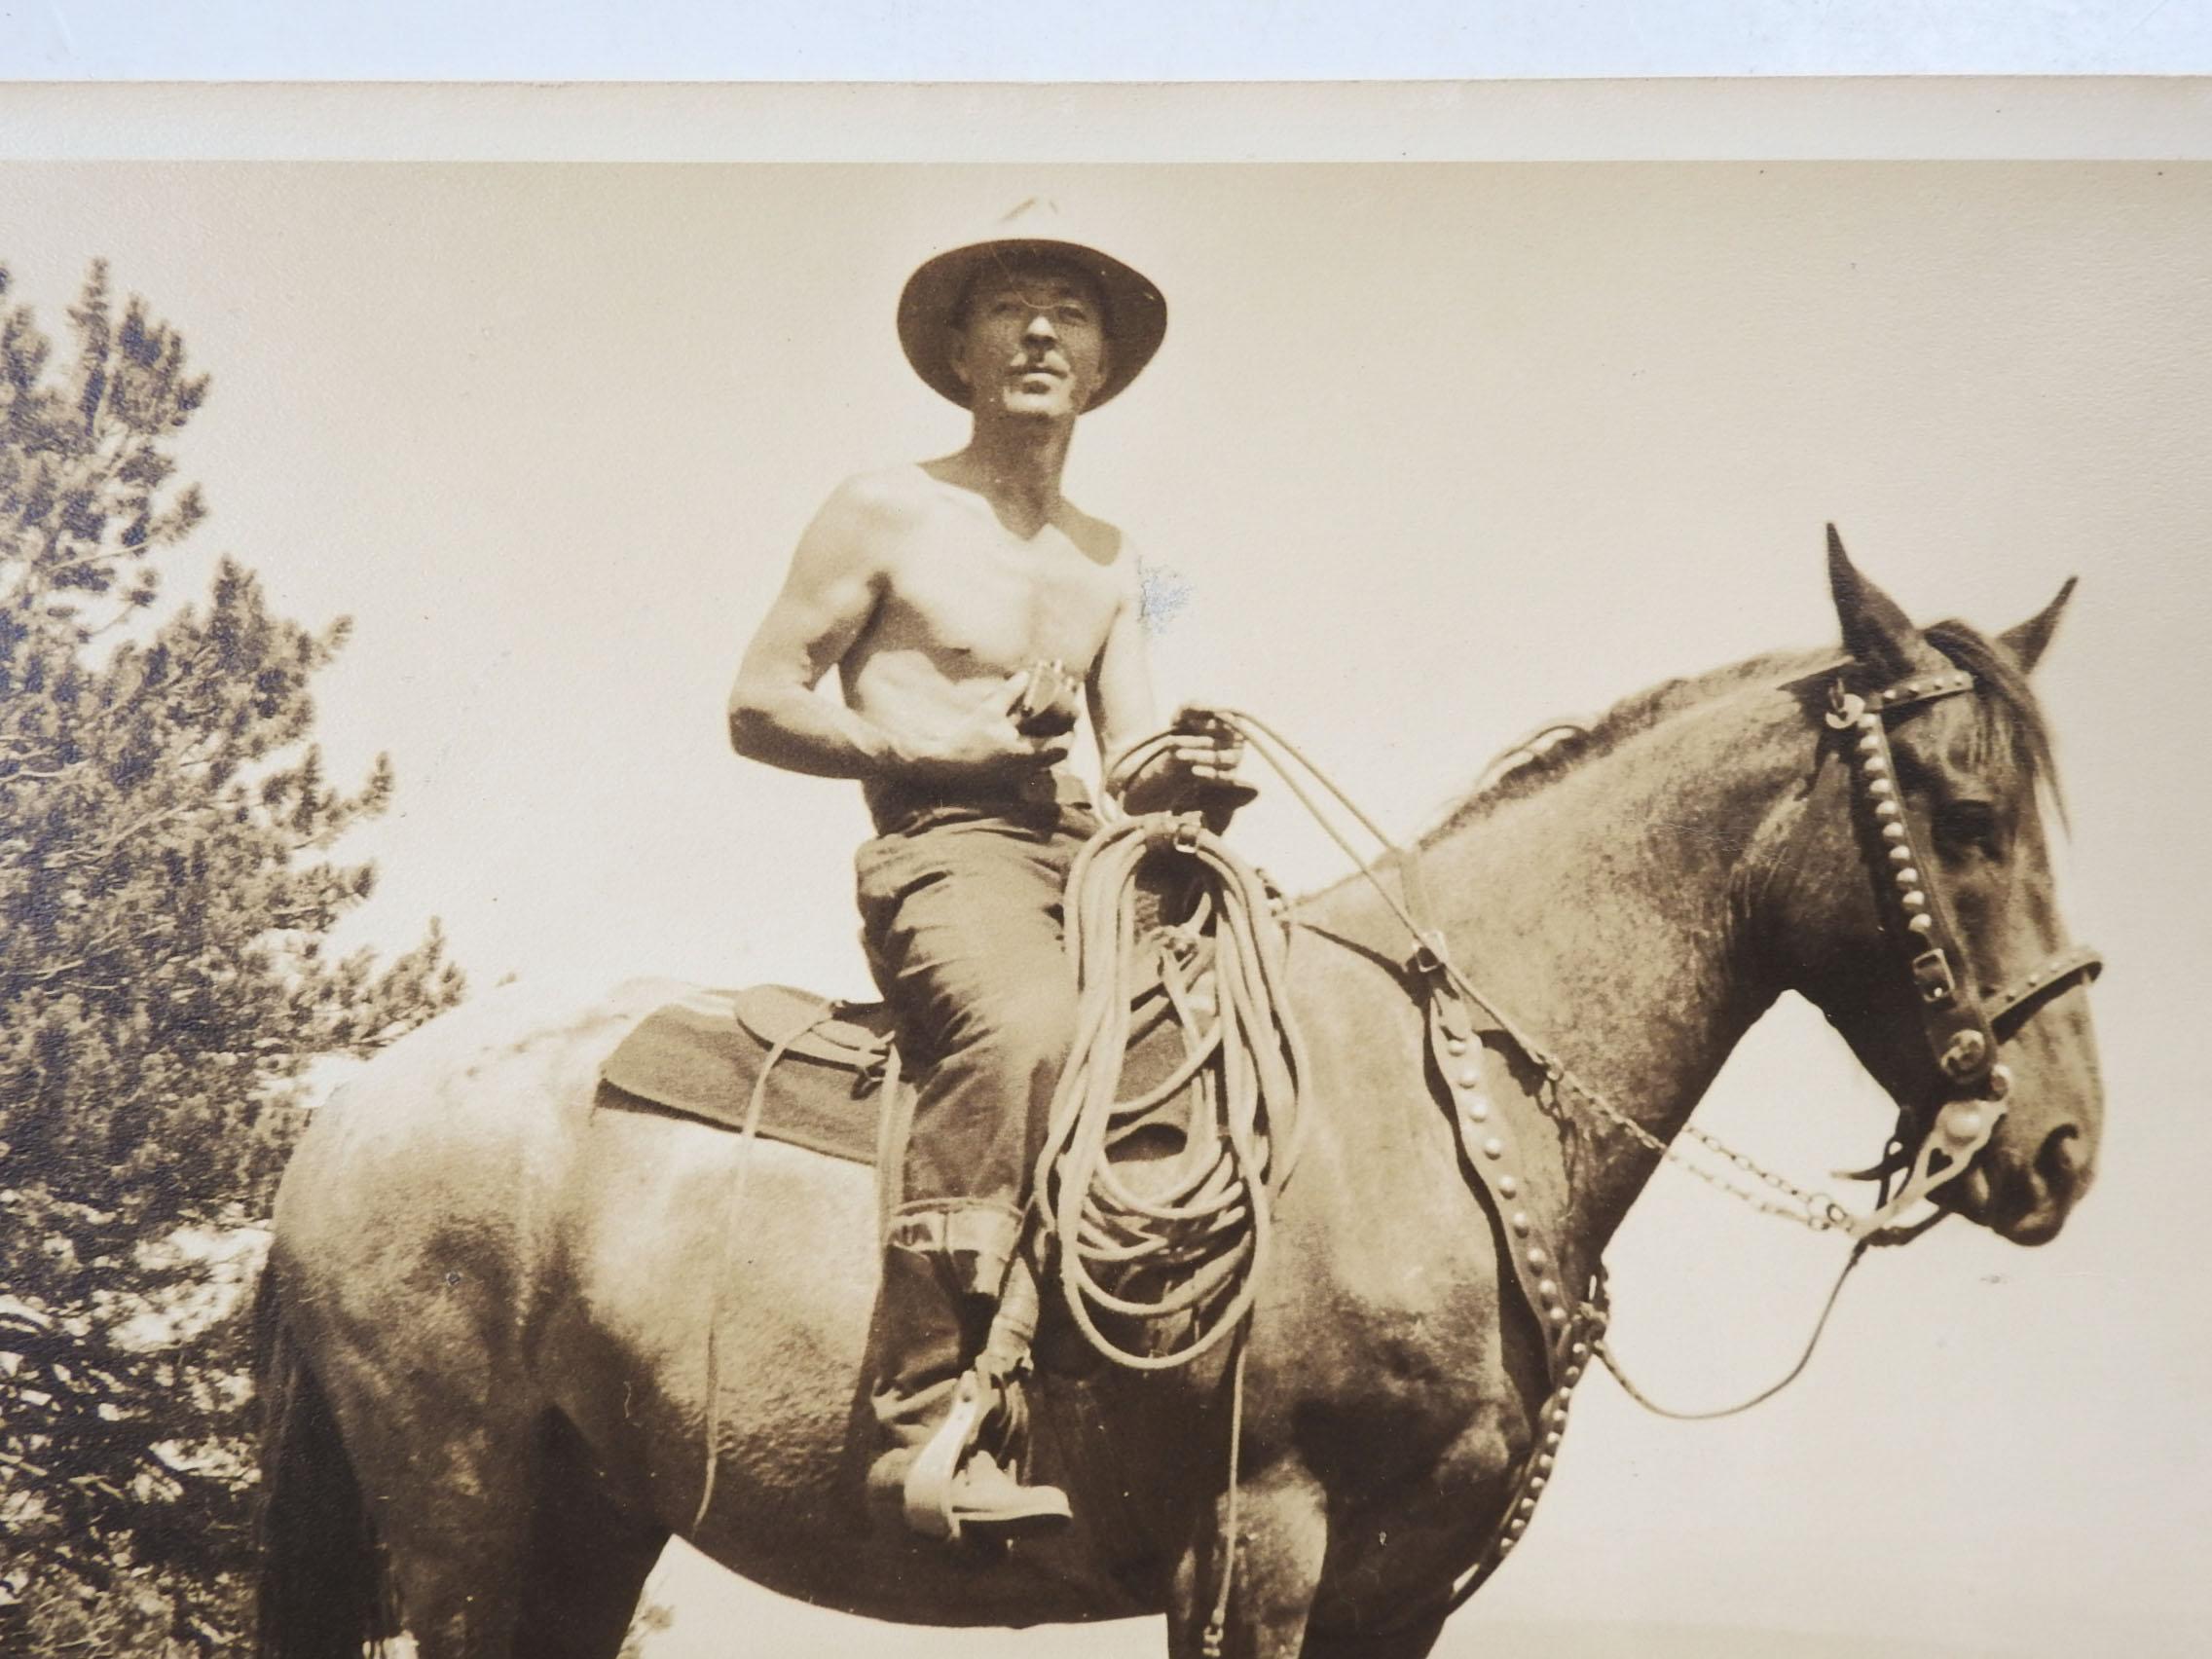 Fotografie eines Mannes auf einem Pferd, ca. 1940. Wahrscheinlich Kalifornien, basierend auf dem Gebiss und den römischen Zügeln. Ein robust aussehender Mann ohne Hemd, der möglicherweise eine Kamera in der Hand hält, schwer zu sagen. Großartiges